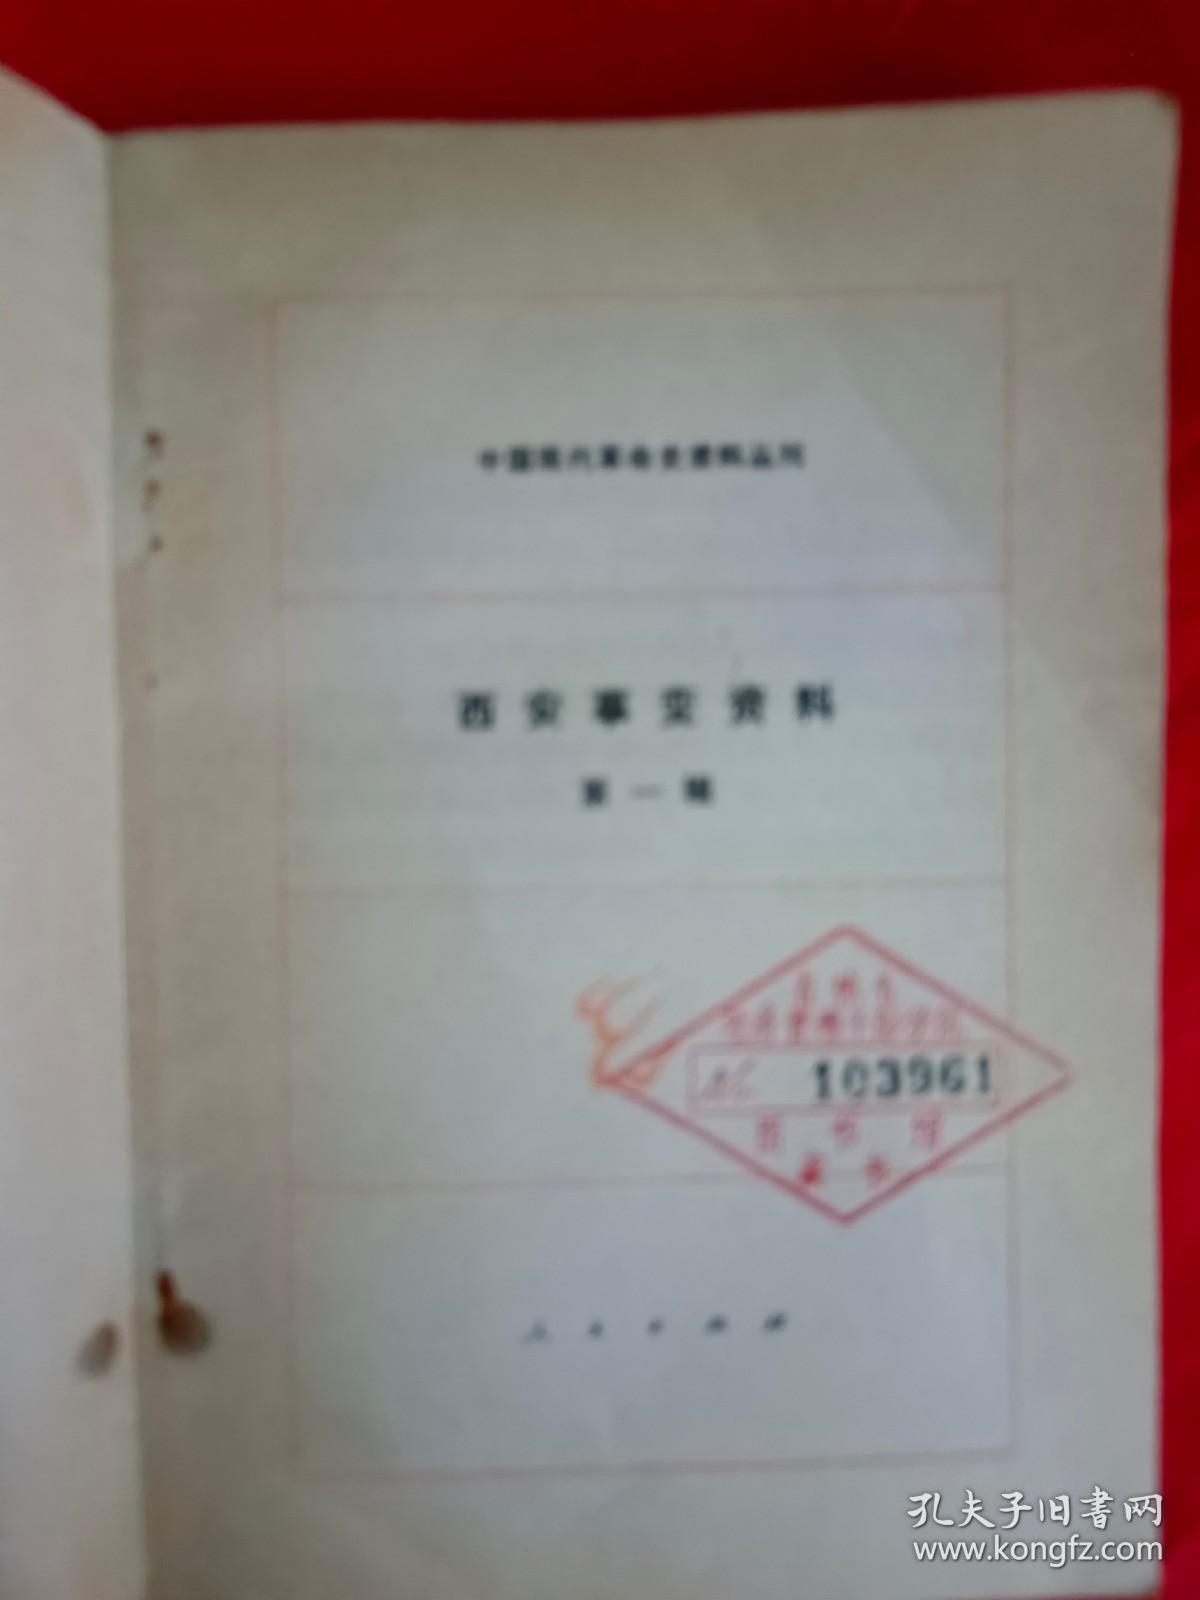 西安事变资料（中国现代革命史资料丛刊） 第一辑 一版一印　　（在原书柜上右后）